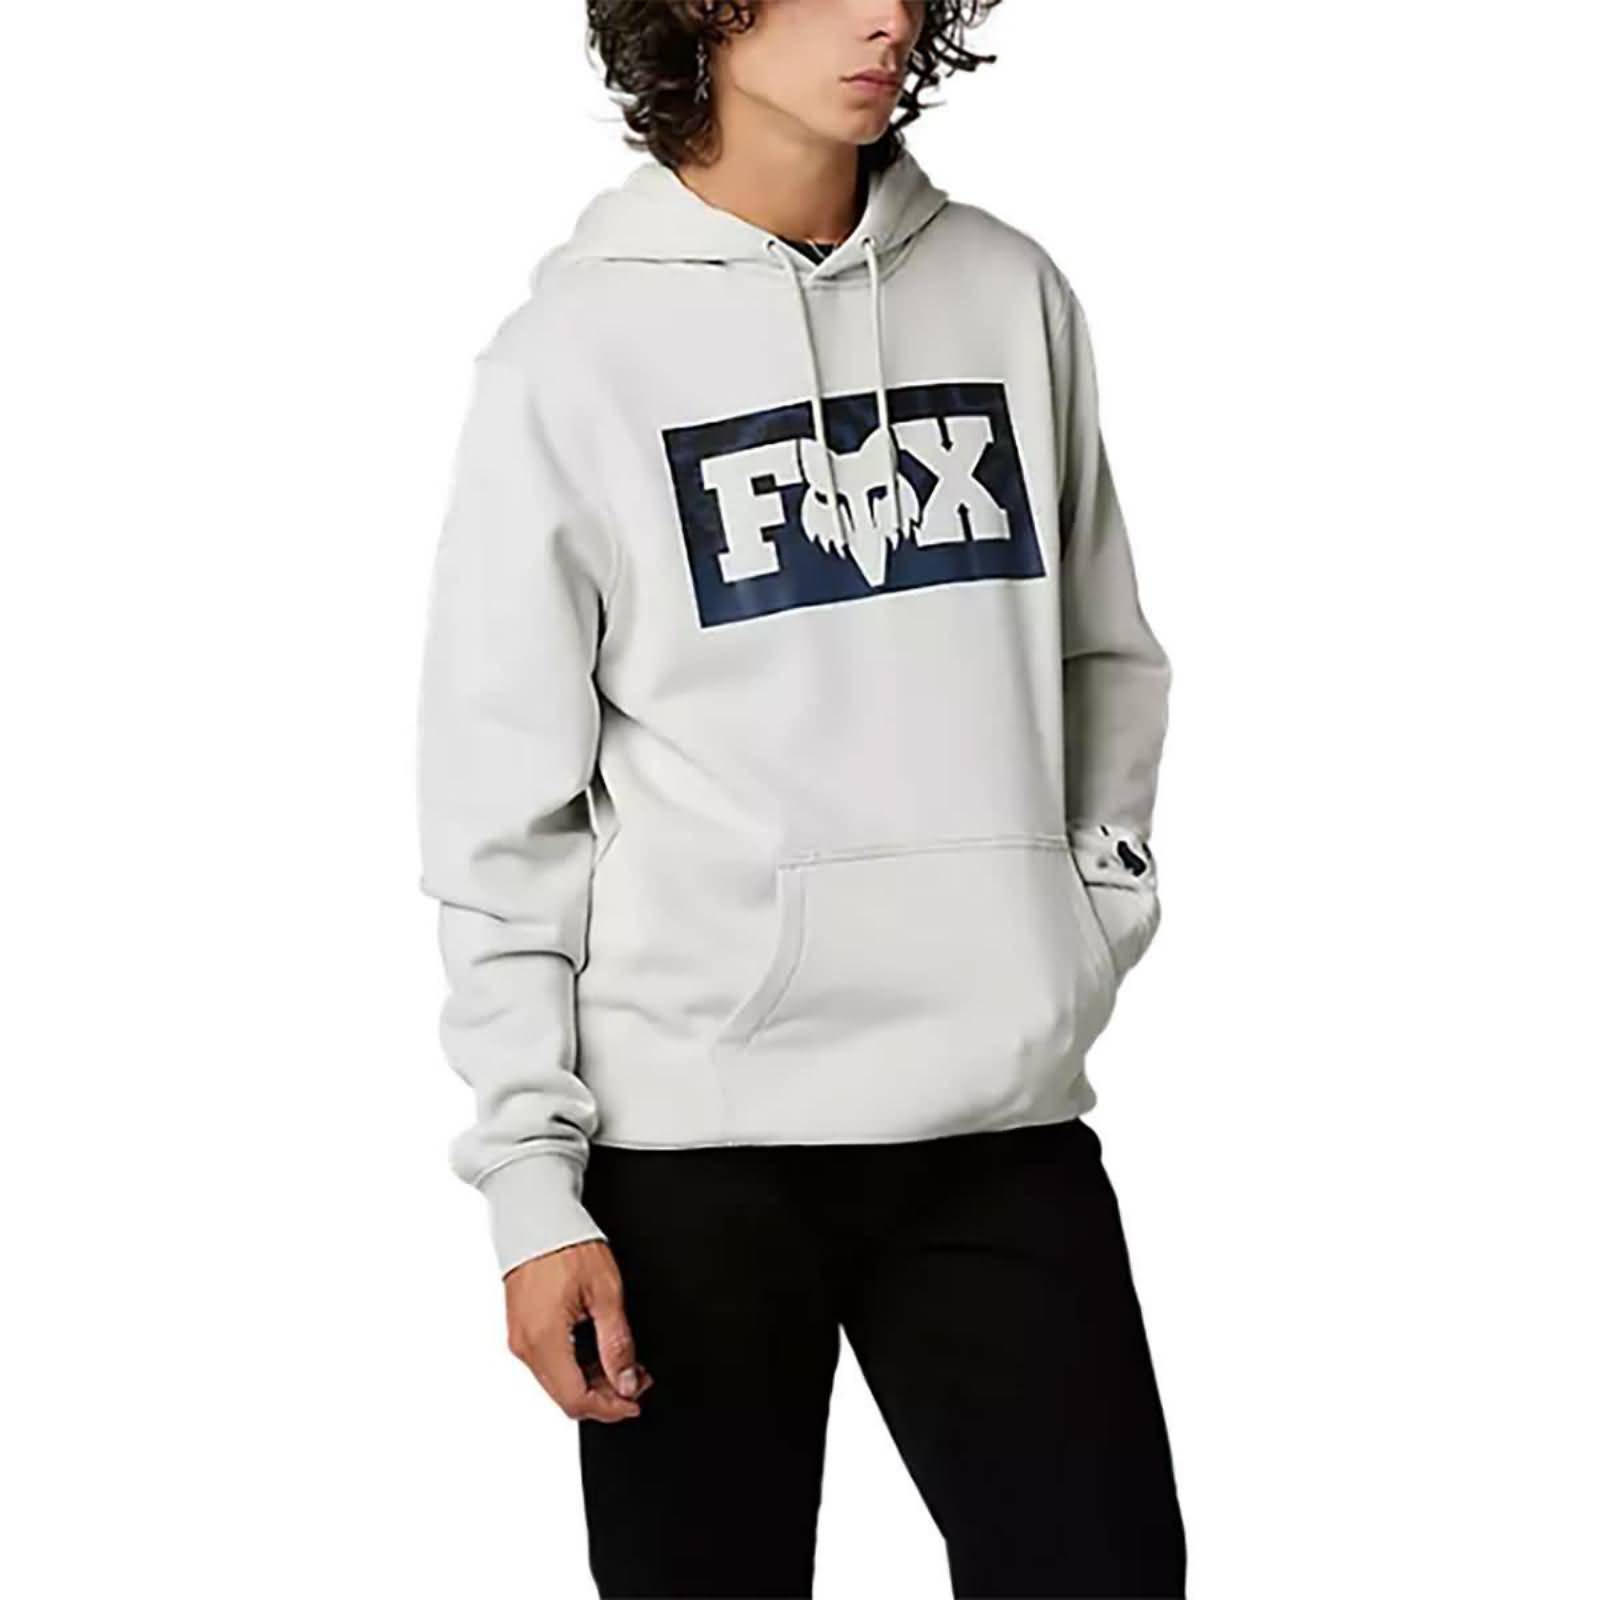 Fox Racing Nuklr Men's Hoody Pullover Sweatshirts-29855